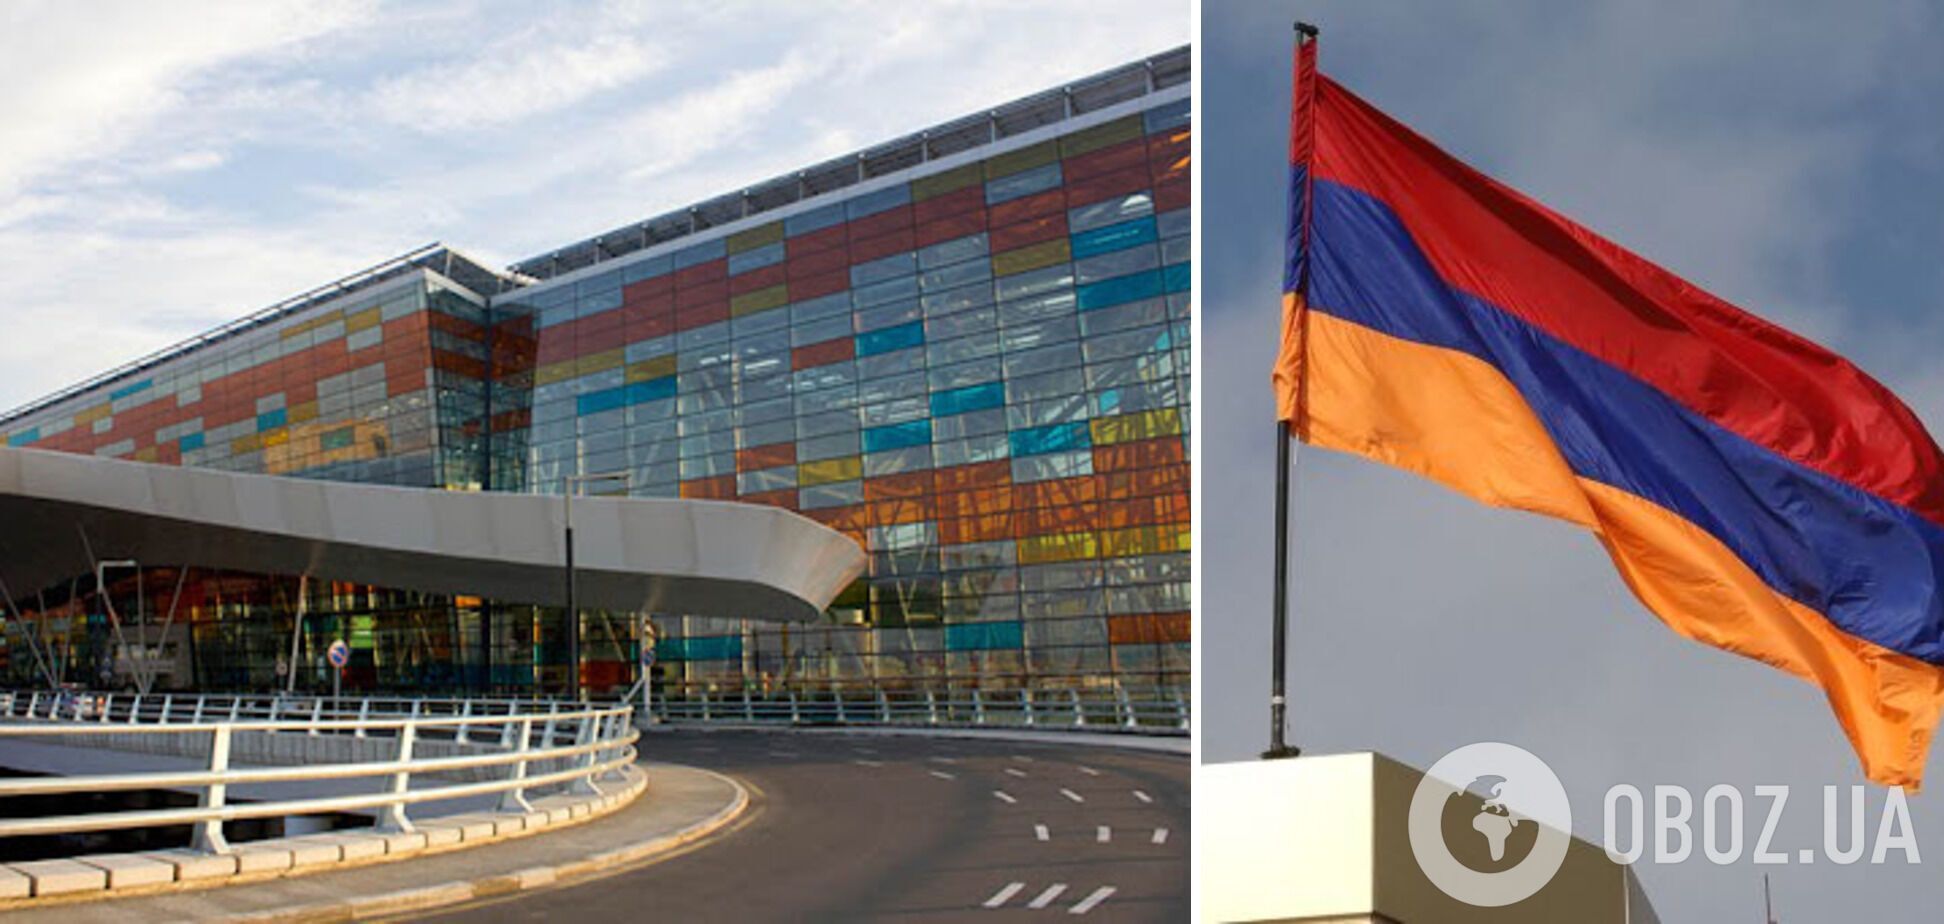 Вірменія вимагає вивести прикордонників РФ з аеропорту в Єревані: що відбувається
